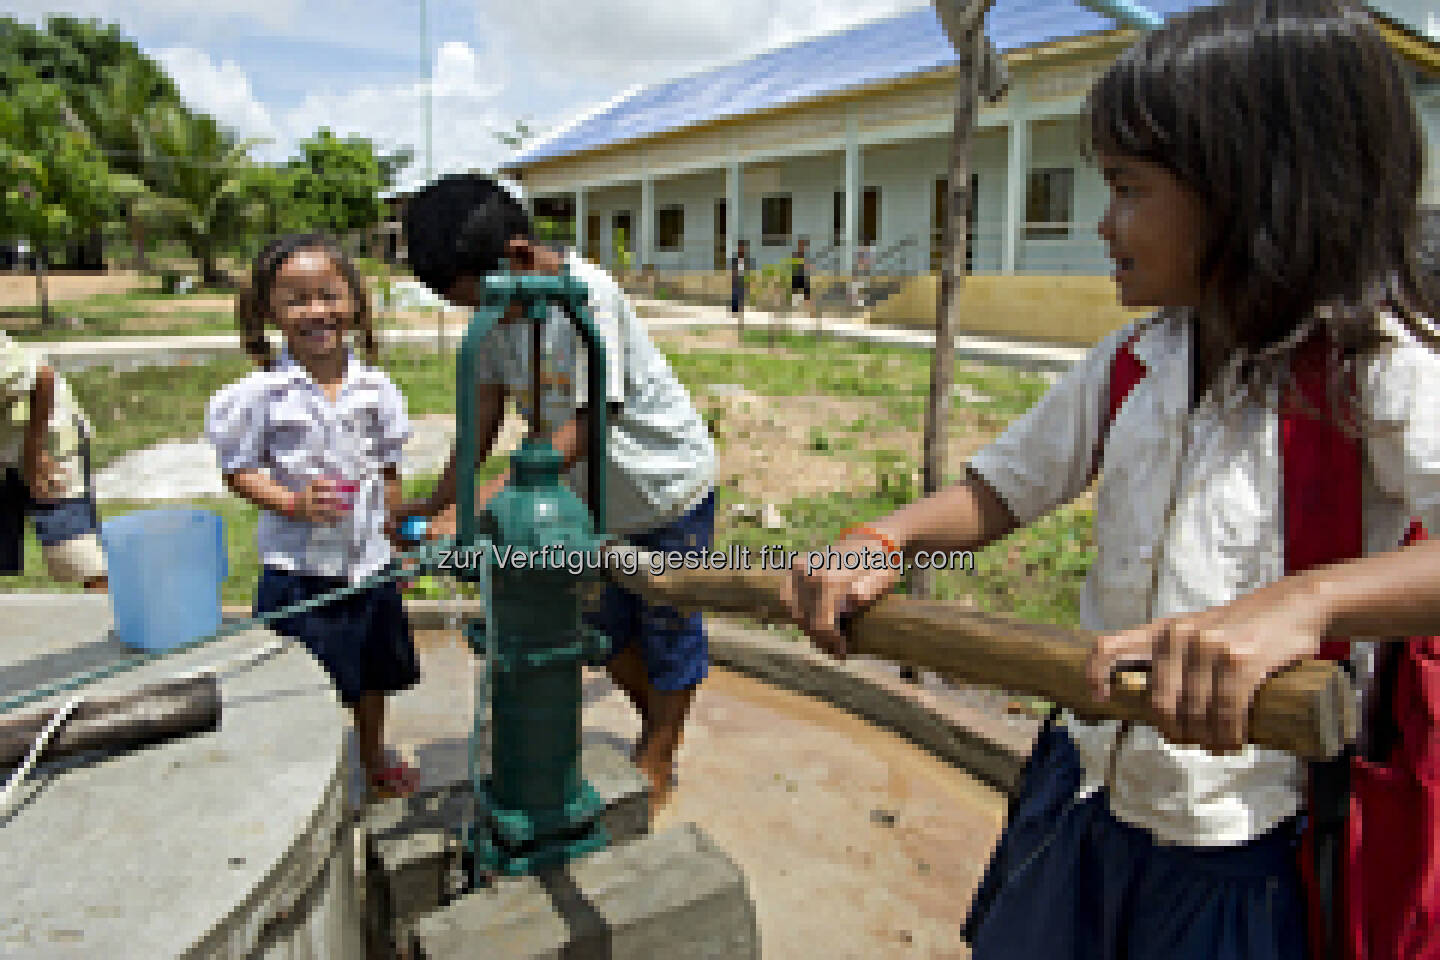 BWT: Anlässlich des diesjährigen Weltwassertages am 22. März verschafft BWT Menschen in Kambodscha Zugang zu sauberem Wasser. Eine Spende finanziert den Bau eines Brunnens, der 25 Familien in einer Provinz im Nordosten des Landes mit hygienisch einwandfreiem Trinkwasser versorgt (Aussendung)